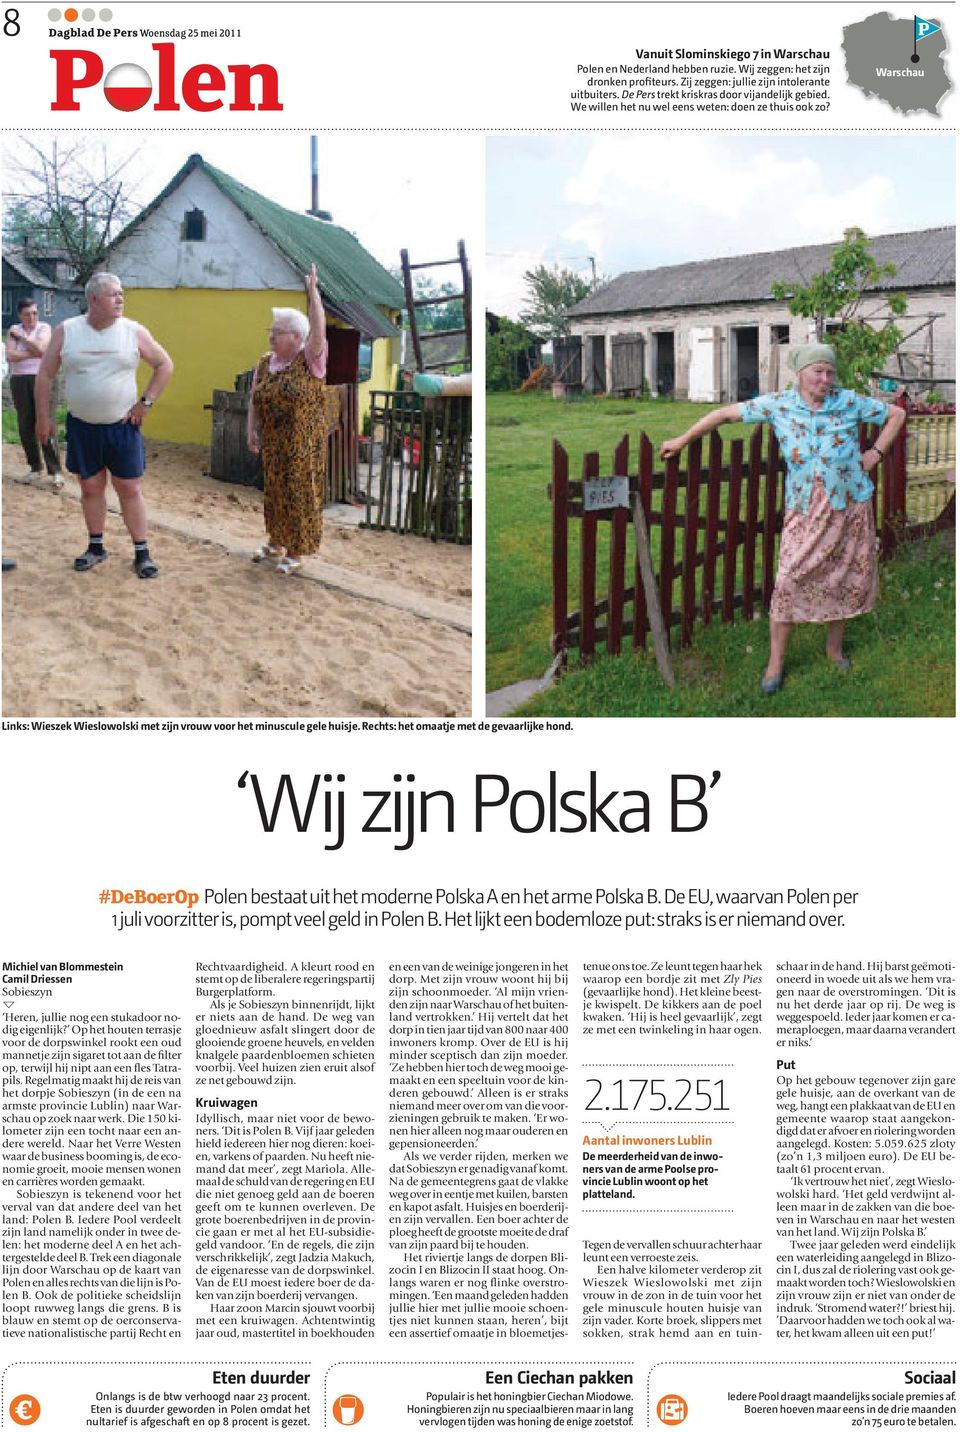 Rechts: het omaatje met de gevaarlijke hond. Wij zijn Polska B #DeBoerOp Polen bestaat uit het moderne Polska A en het arme Polska B.